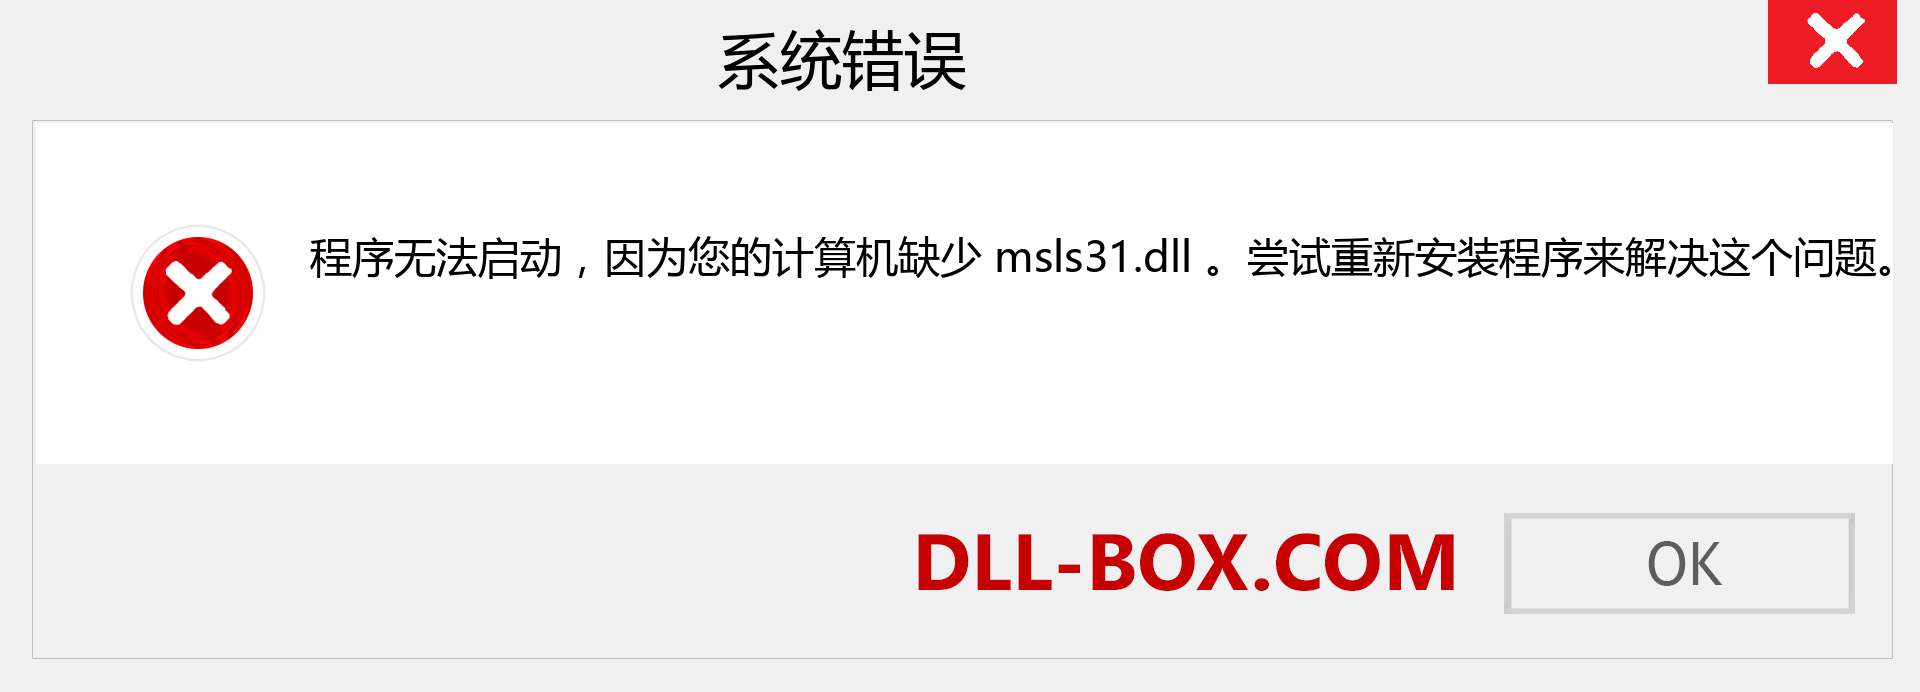 msls31.dll 文件丢失？。 适用于 Windows 7、8、10 的下载 - 修复 Windows、照片、图像上的 msls31 dll 丢失错误